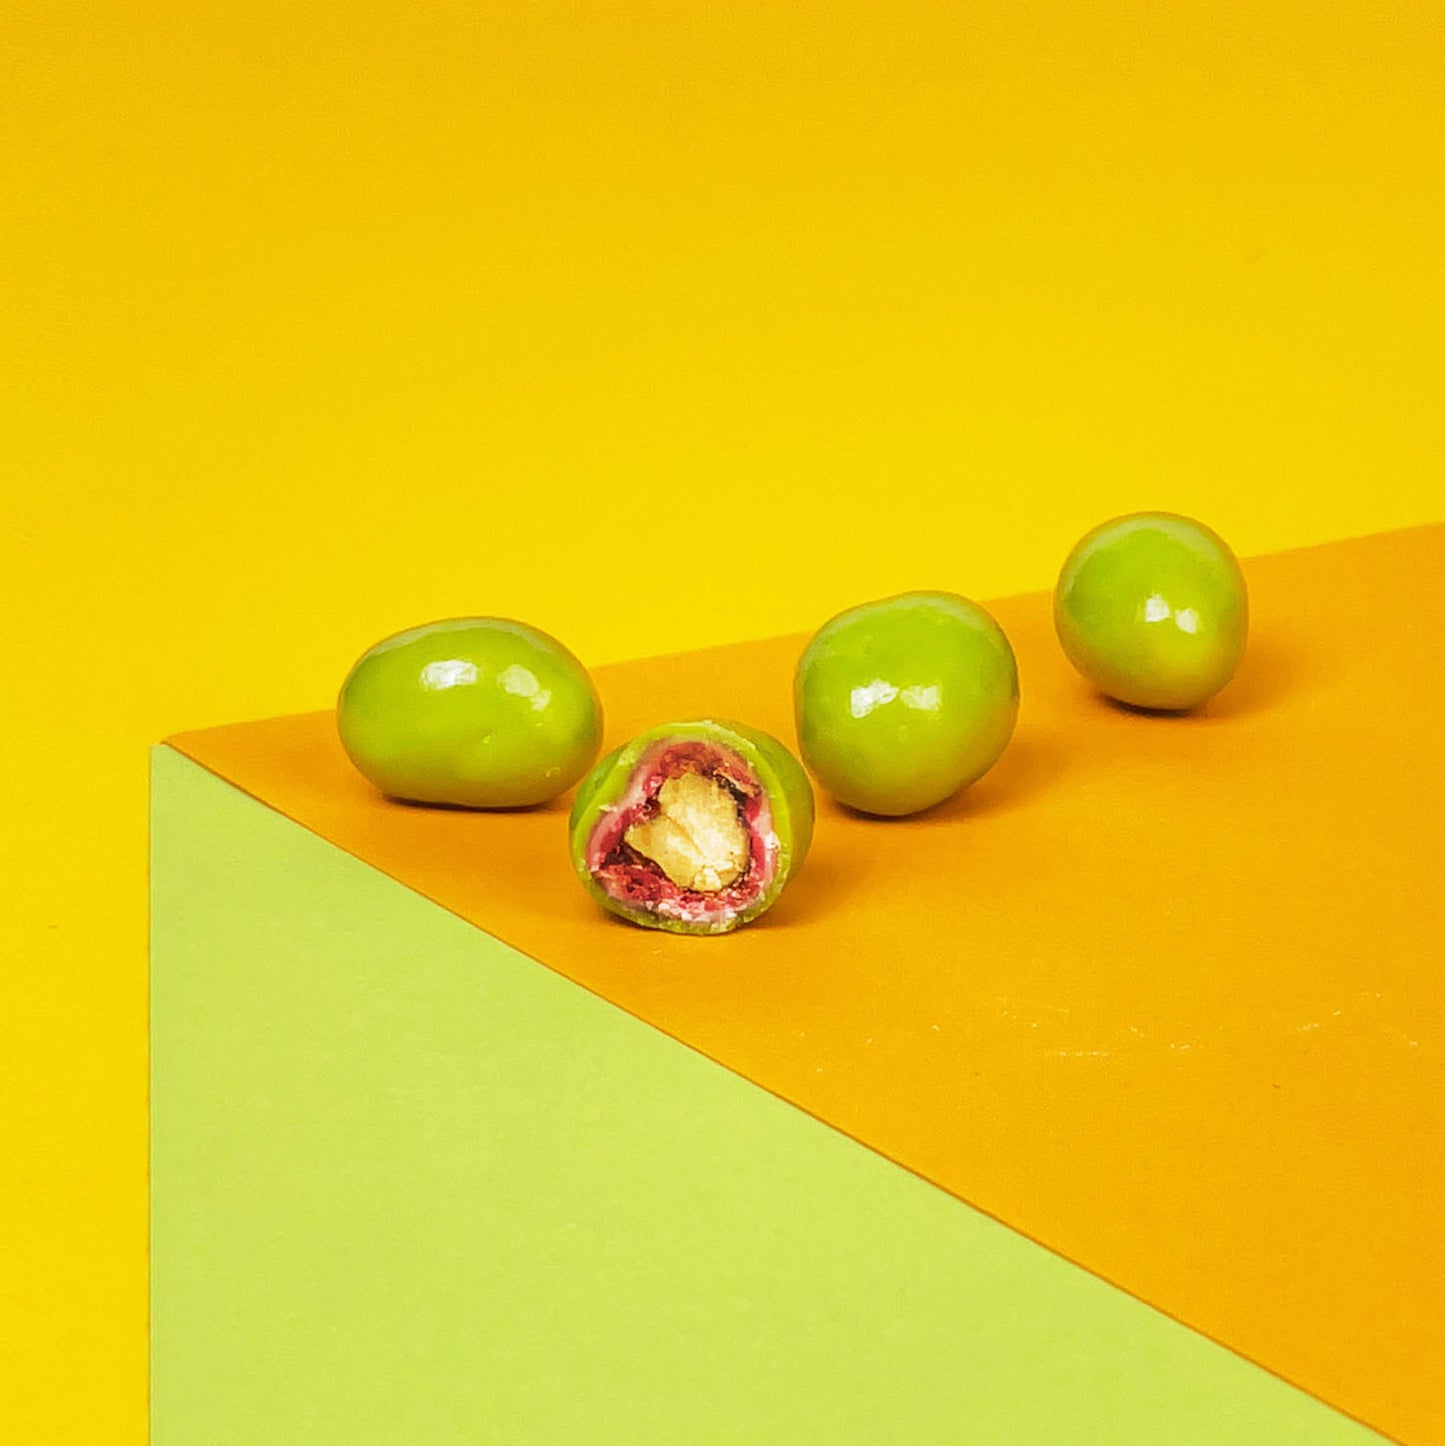 Angeschnittenes Pistaziendragee glänz vor einem gelben Hintergrund. Weiße Schokolade umhüllt die edlen Nüsse.